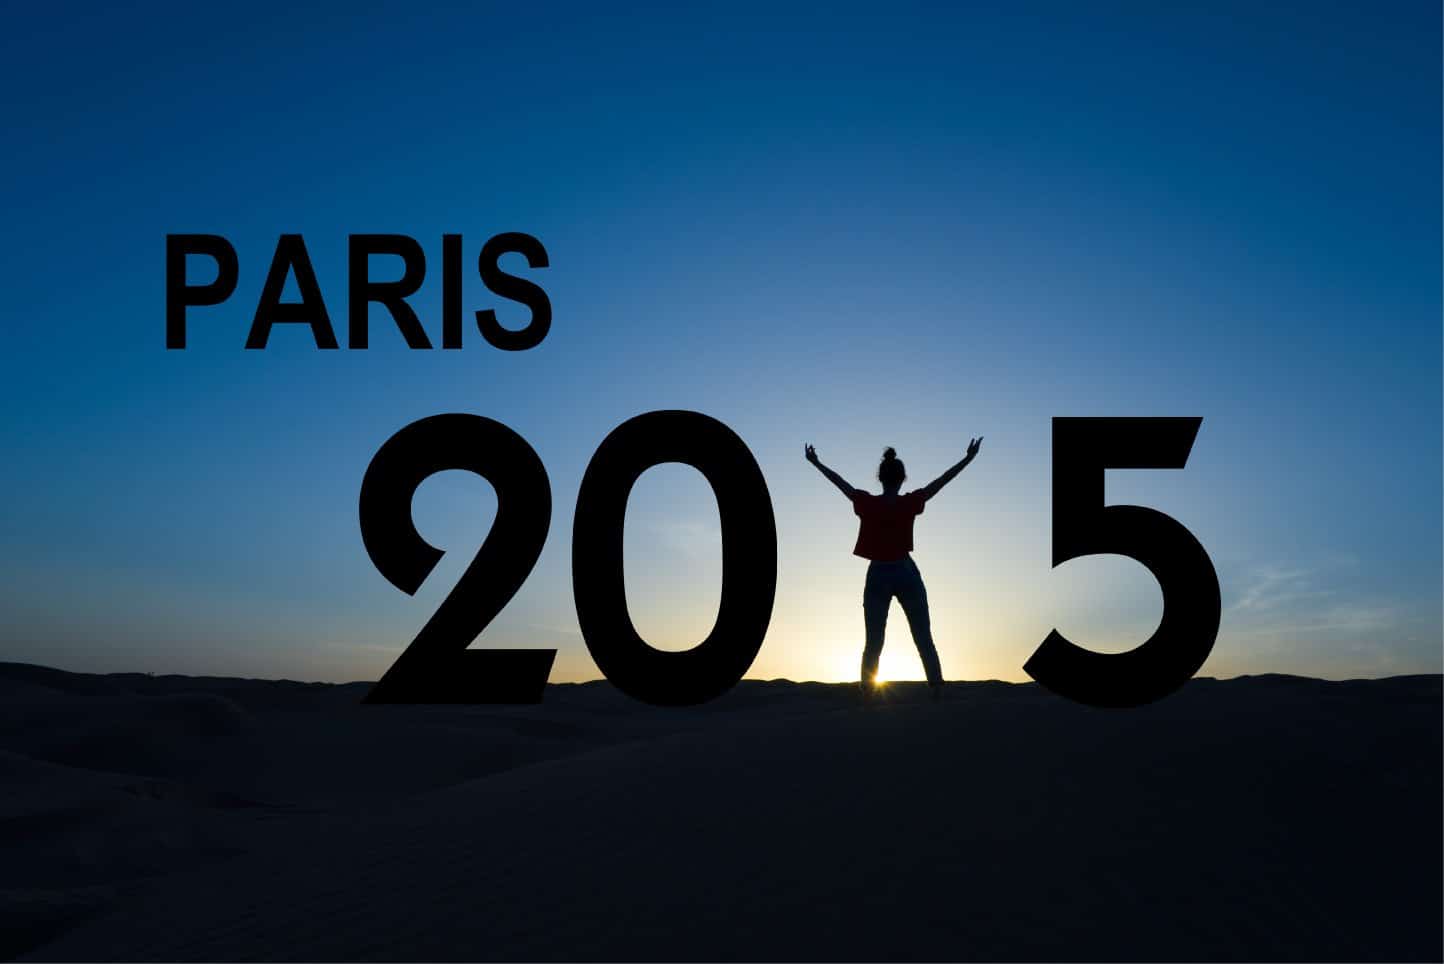 Paris climate talks 2015